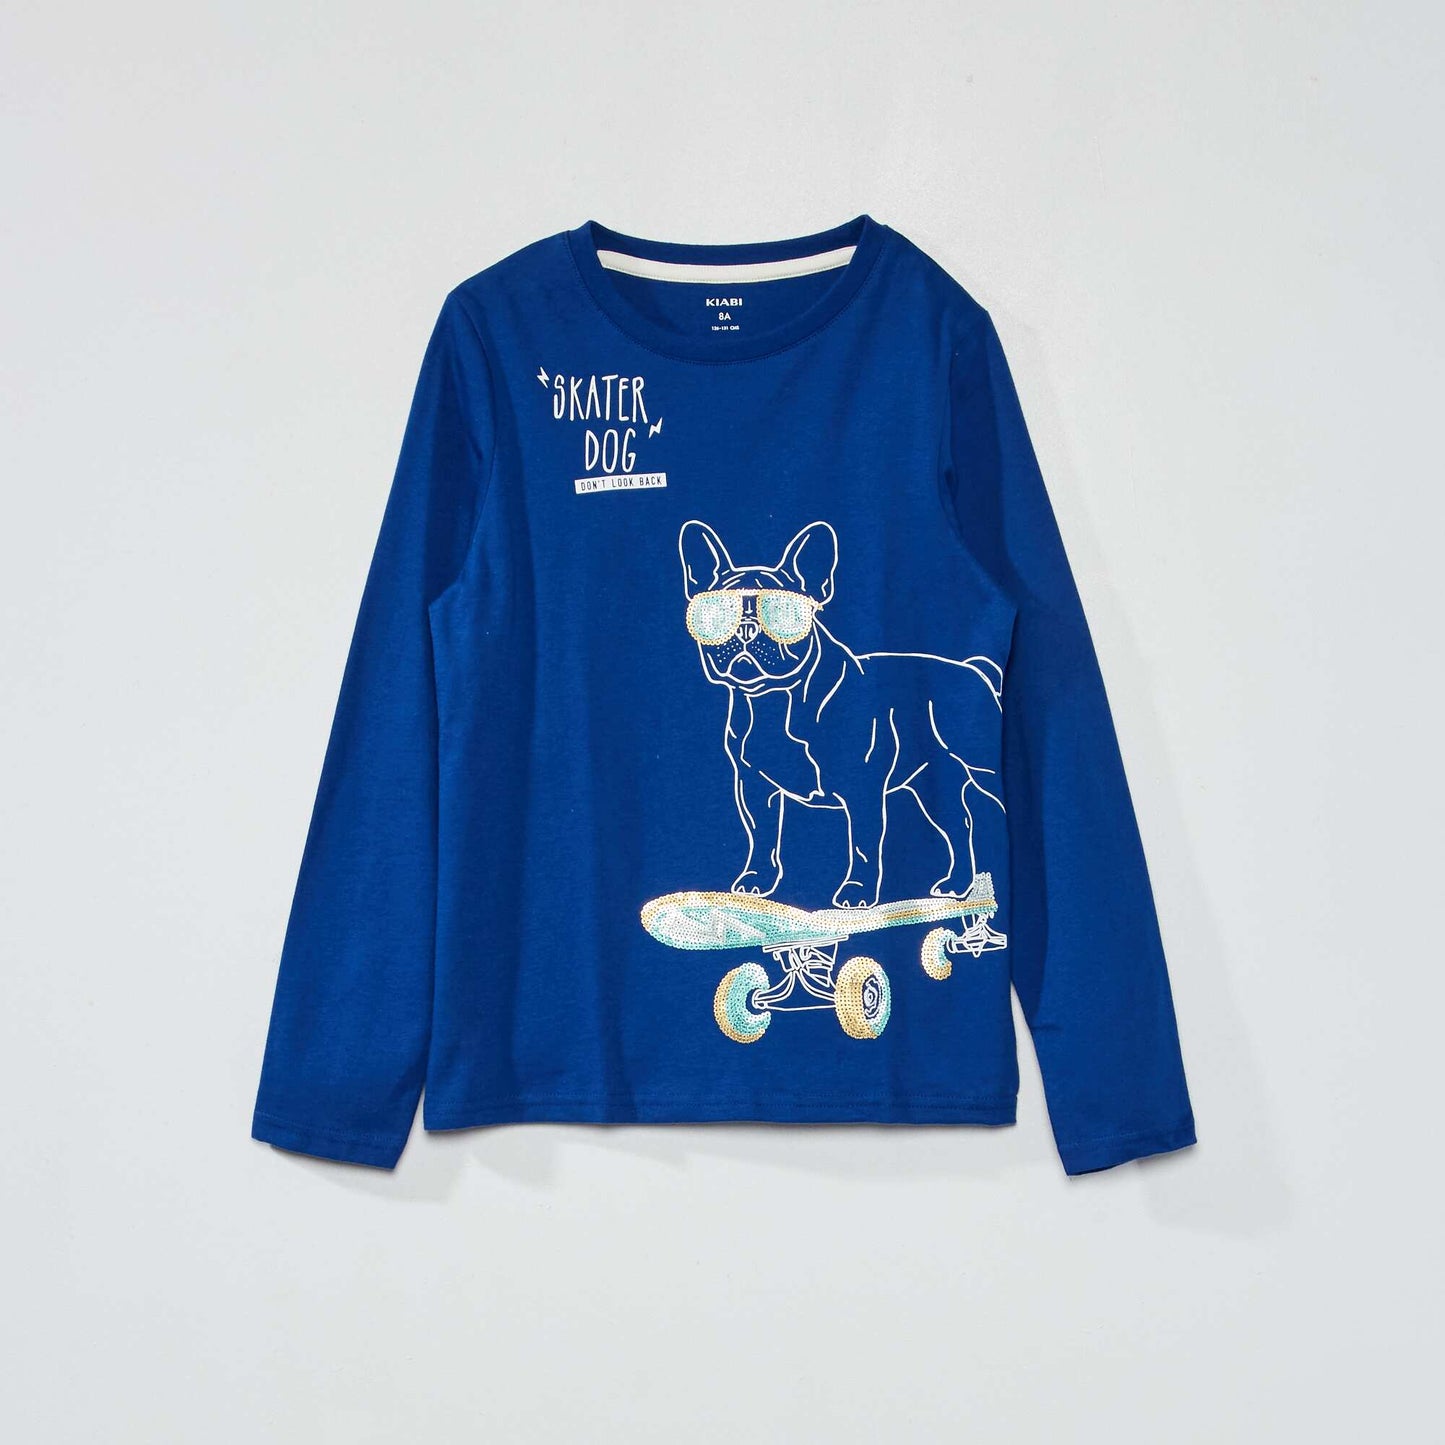 Tee-shirt imprimé 'Skater dog' Bleu